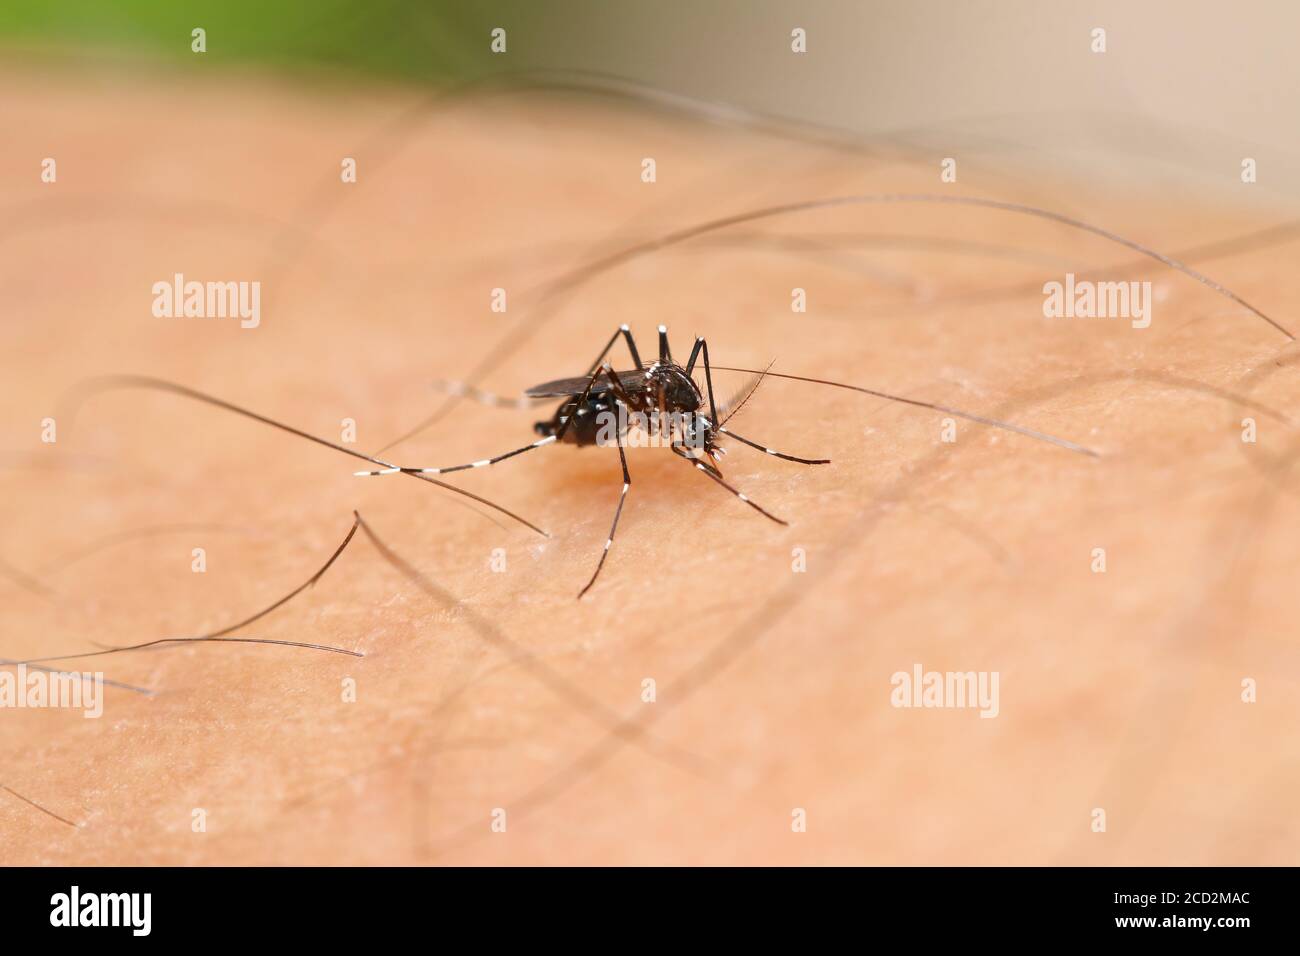 Mosquito Aedes albopictus succionando algo de sangre de la piel humana. El 1 de 2 vector principal que propaga el dengue, el zika, el chikungunya virus al humano Foto de stock